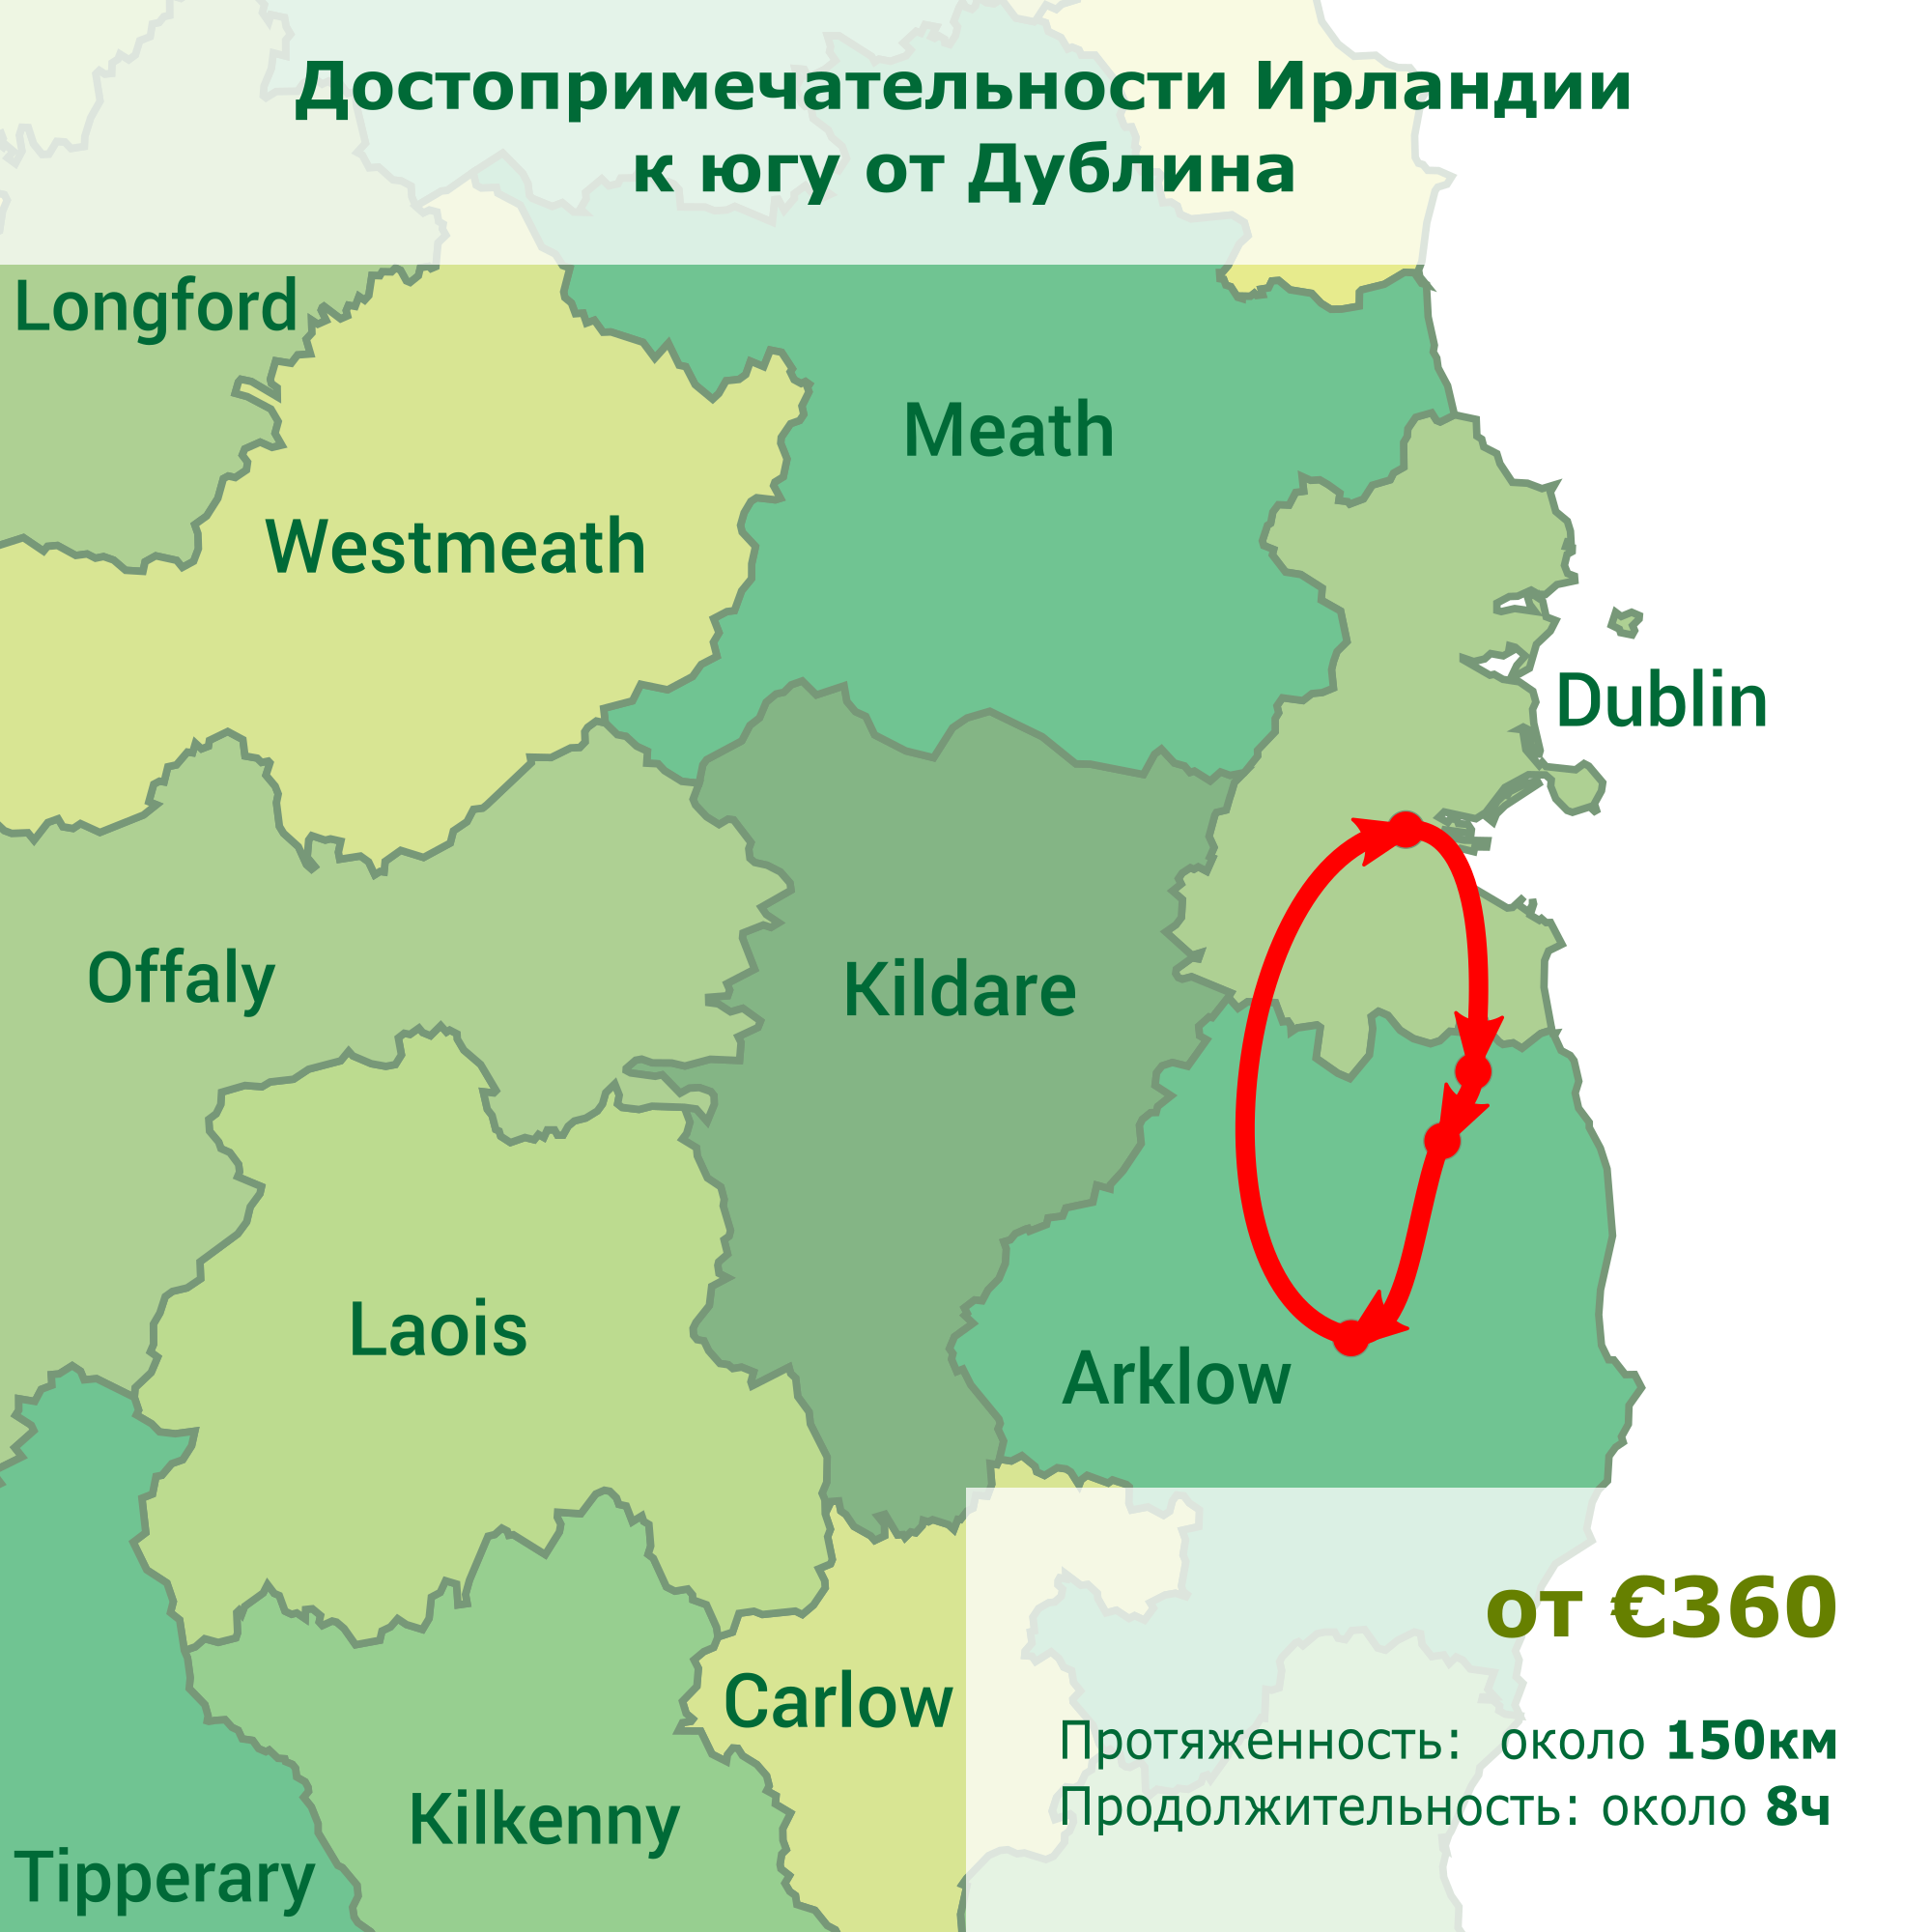 Достопримечательности Ирландии к югу от Дублина